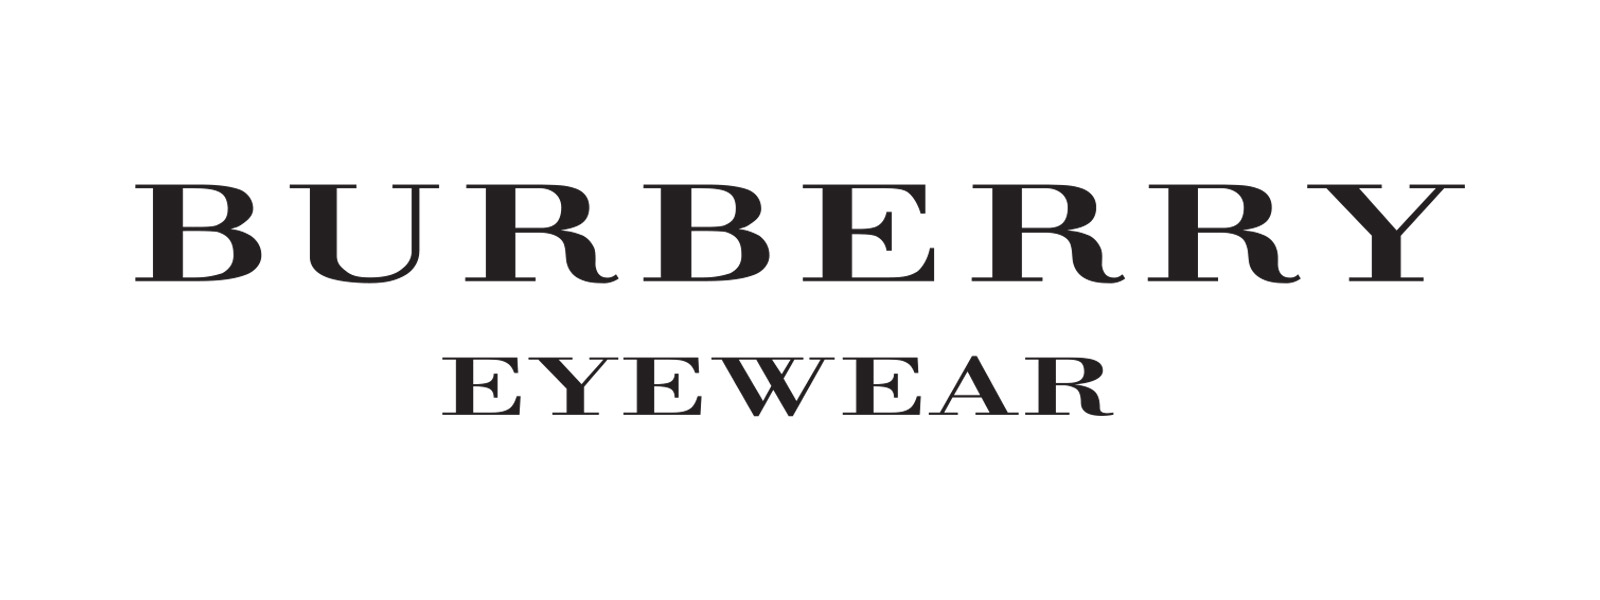 Có những yếu tố nào cần xem xét khi mua mắt kính Burberry nữ chính hãng?
